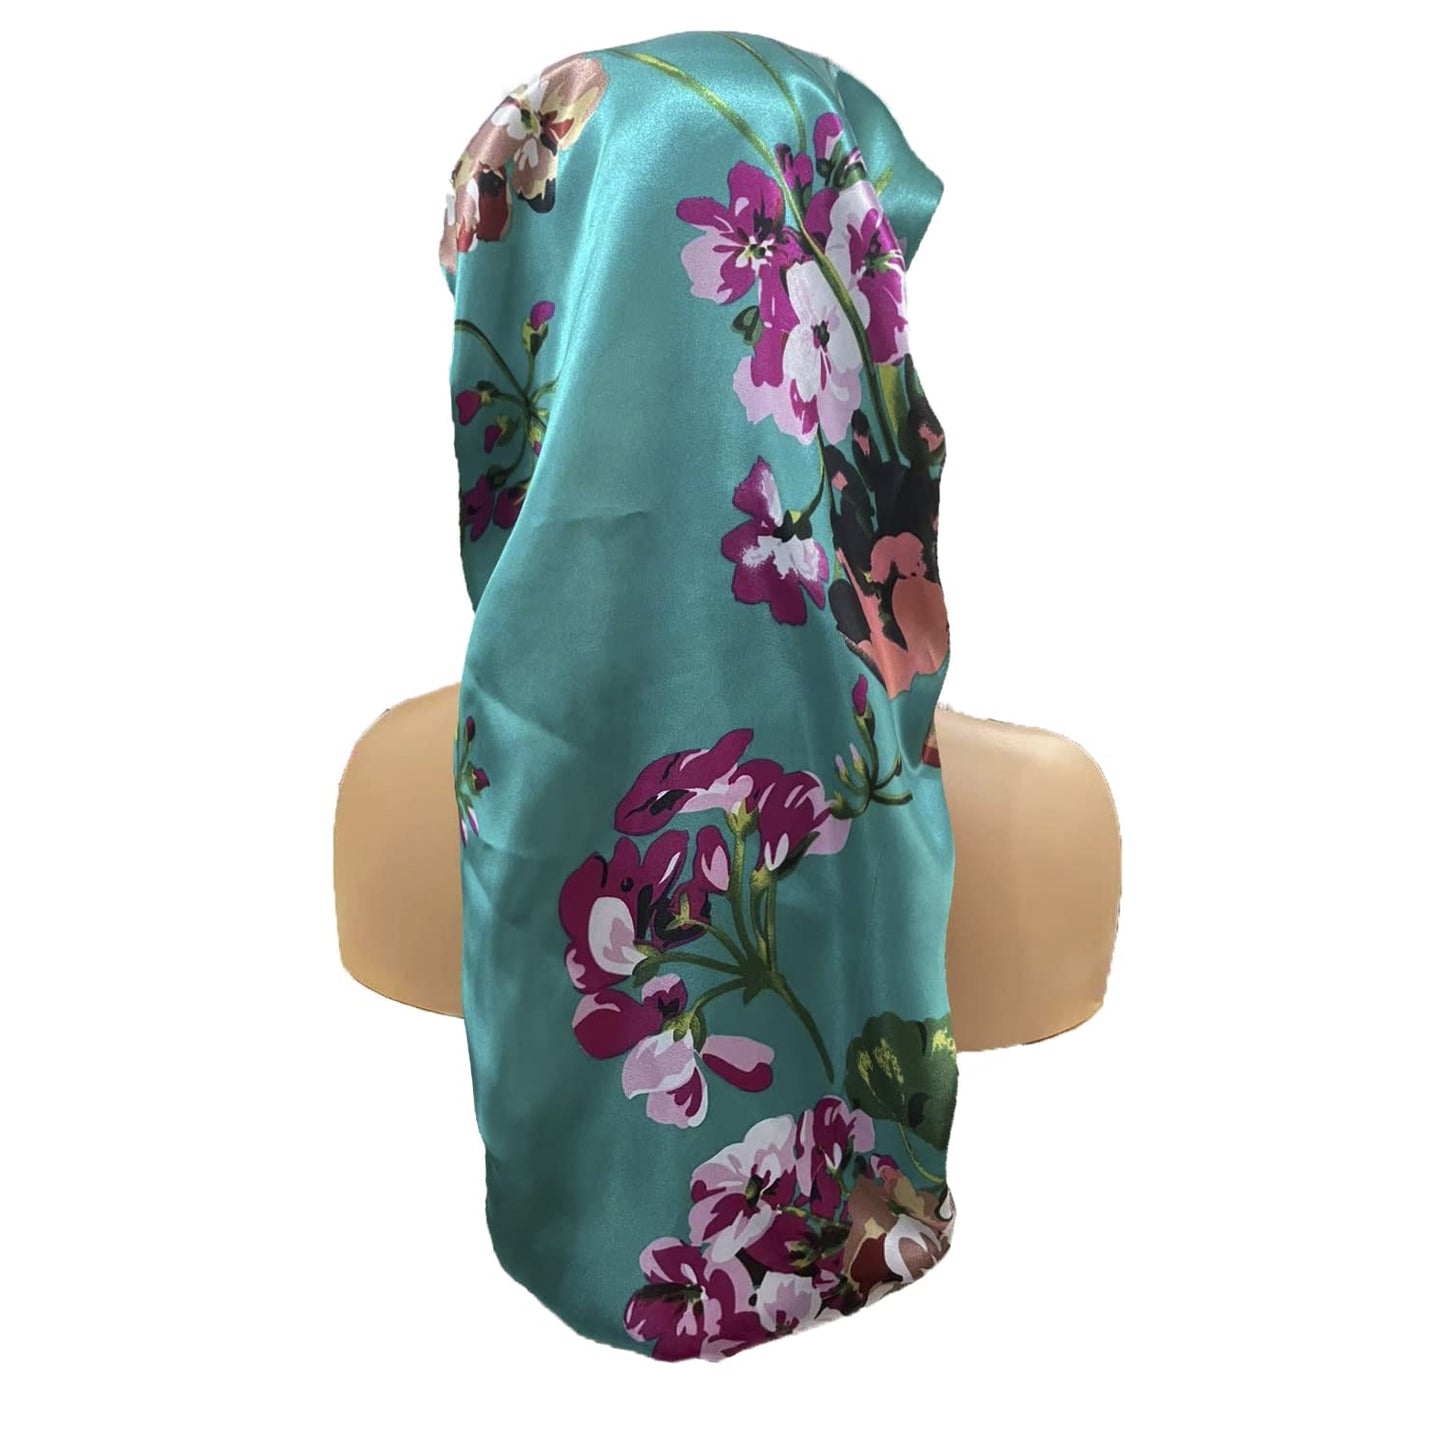 4 Pcs Satin Bonnet for Women, Long Sleep Cap Soft Silky Bonnet for Braids